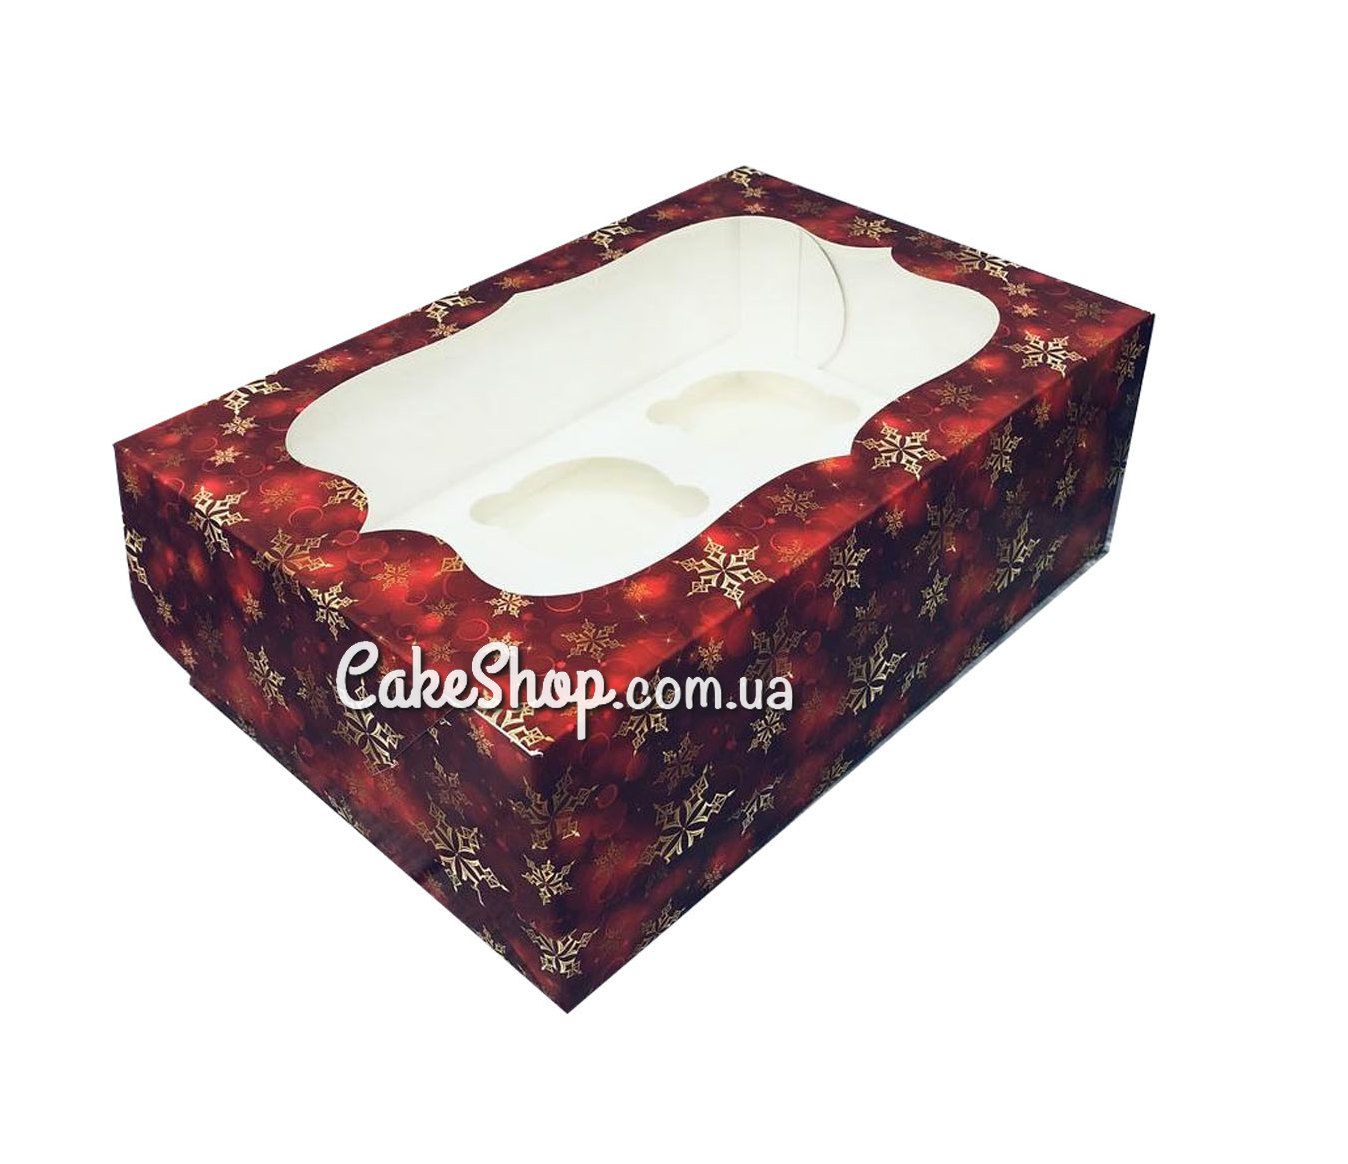 ⋗ Коробка на 6 кексов с прозрачным окном Снежинка красная, 24х18х9 см купить в Украине ➛ CakeShop.com.ua, фото